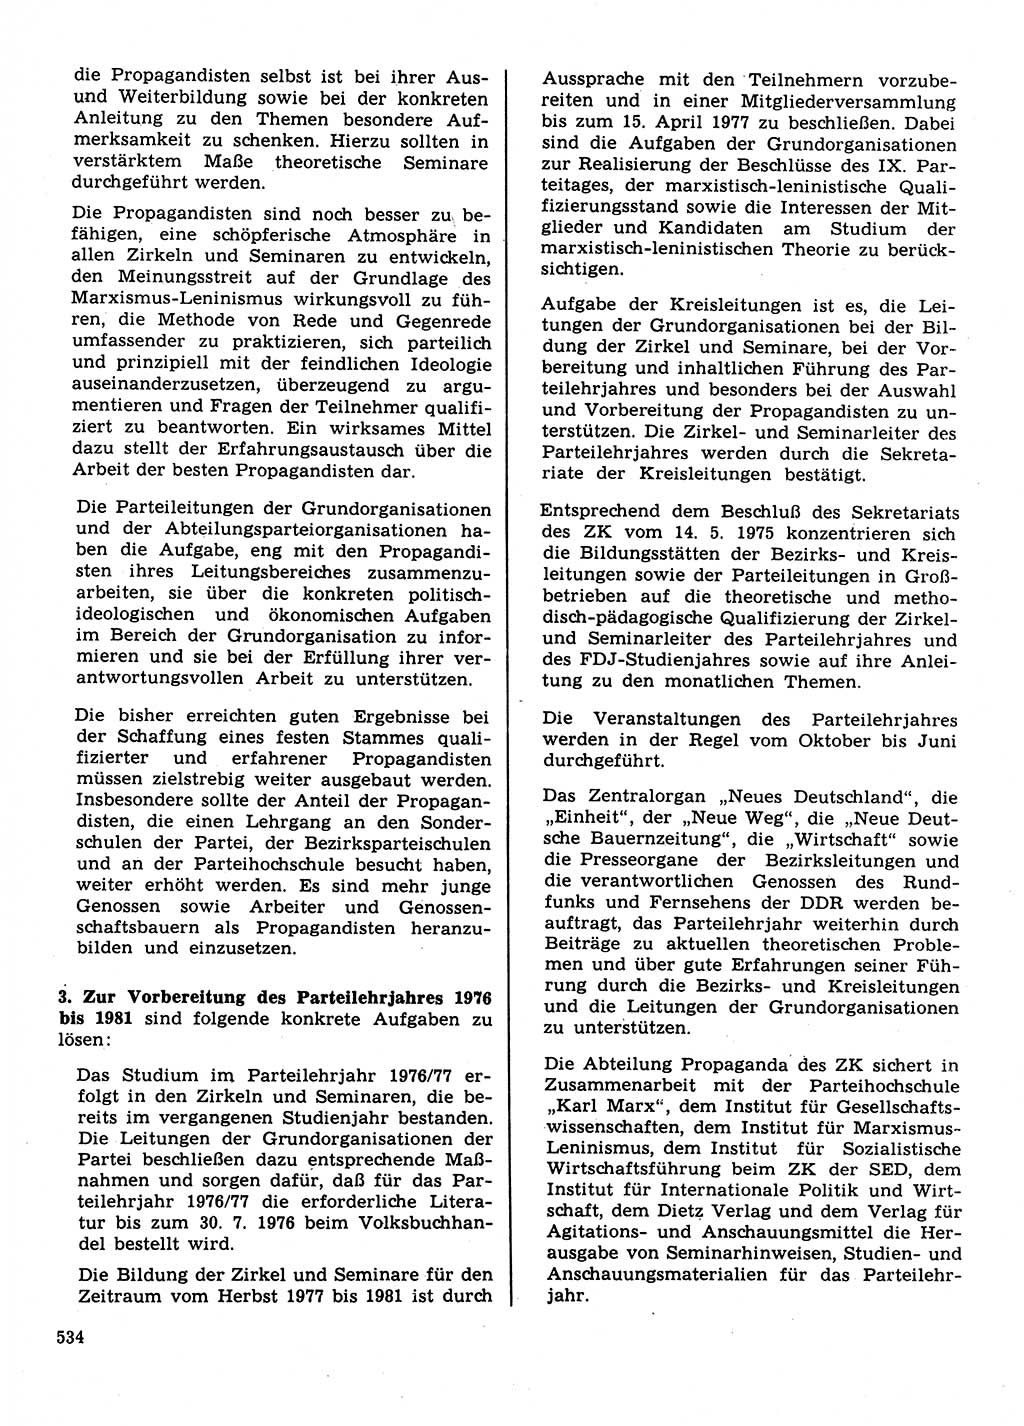 Neuer Weg (NW), Organ des Zentralkomitees (ZK) der SED (Sozialistische Einheitspartei Deutschlands) für Fragen des Parteilebens, 31. Jahrgang [Deutsche Demokratische Republik (DDR)] 1976, Seite 534 (NW ZK SED DDR 1976, S. 534)